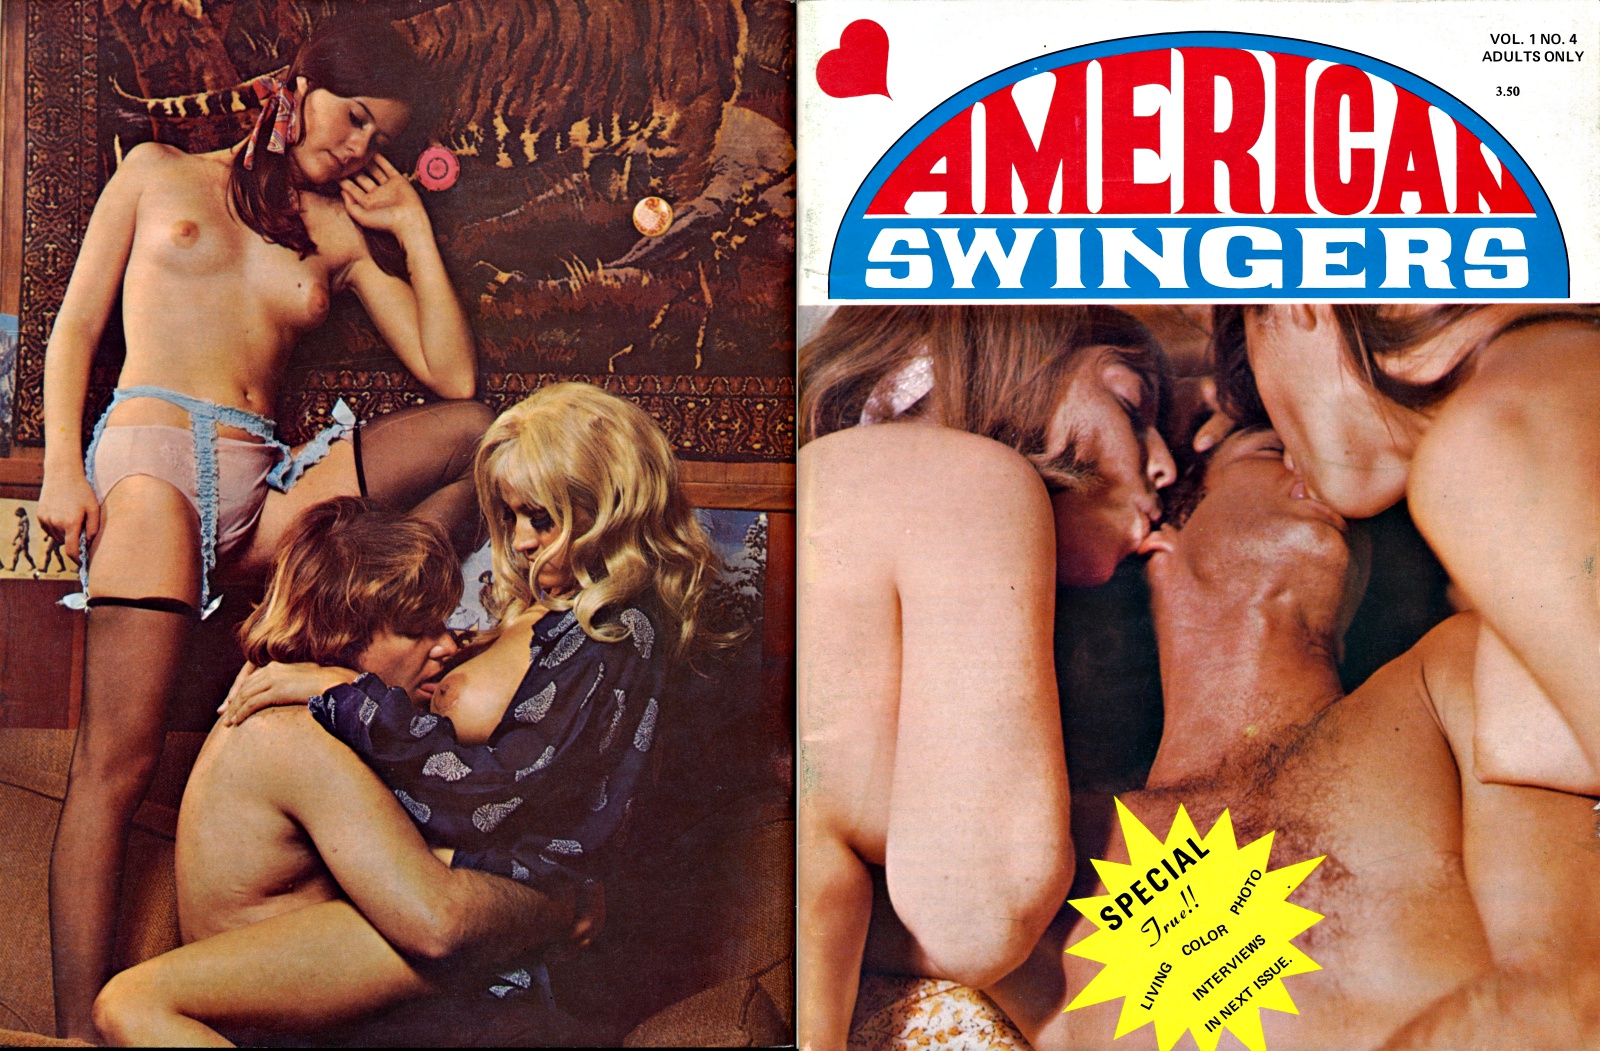 american swinger video magazine 4 Xxx Photos